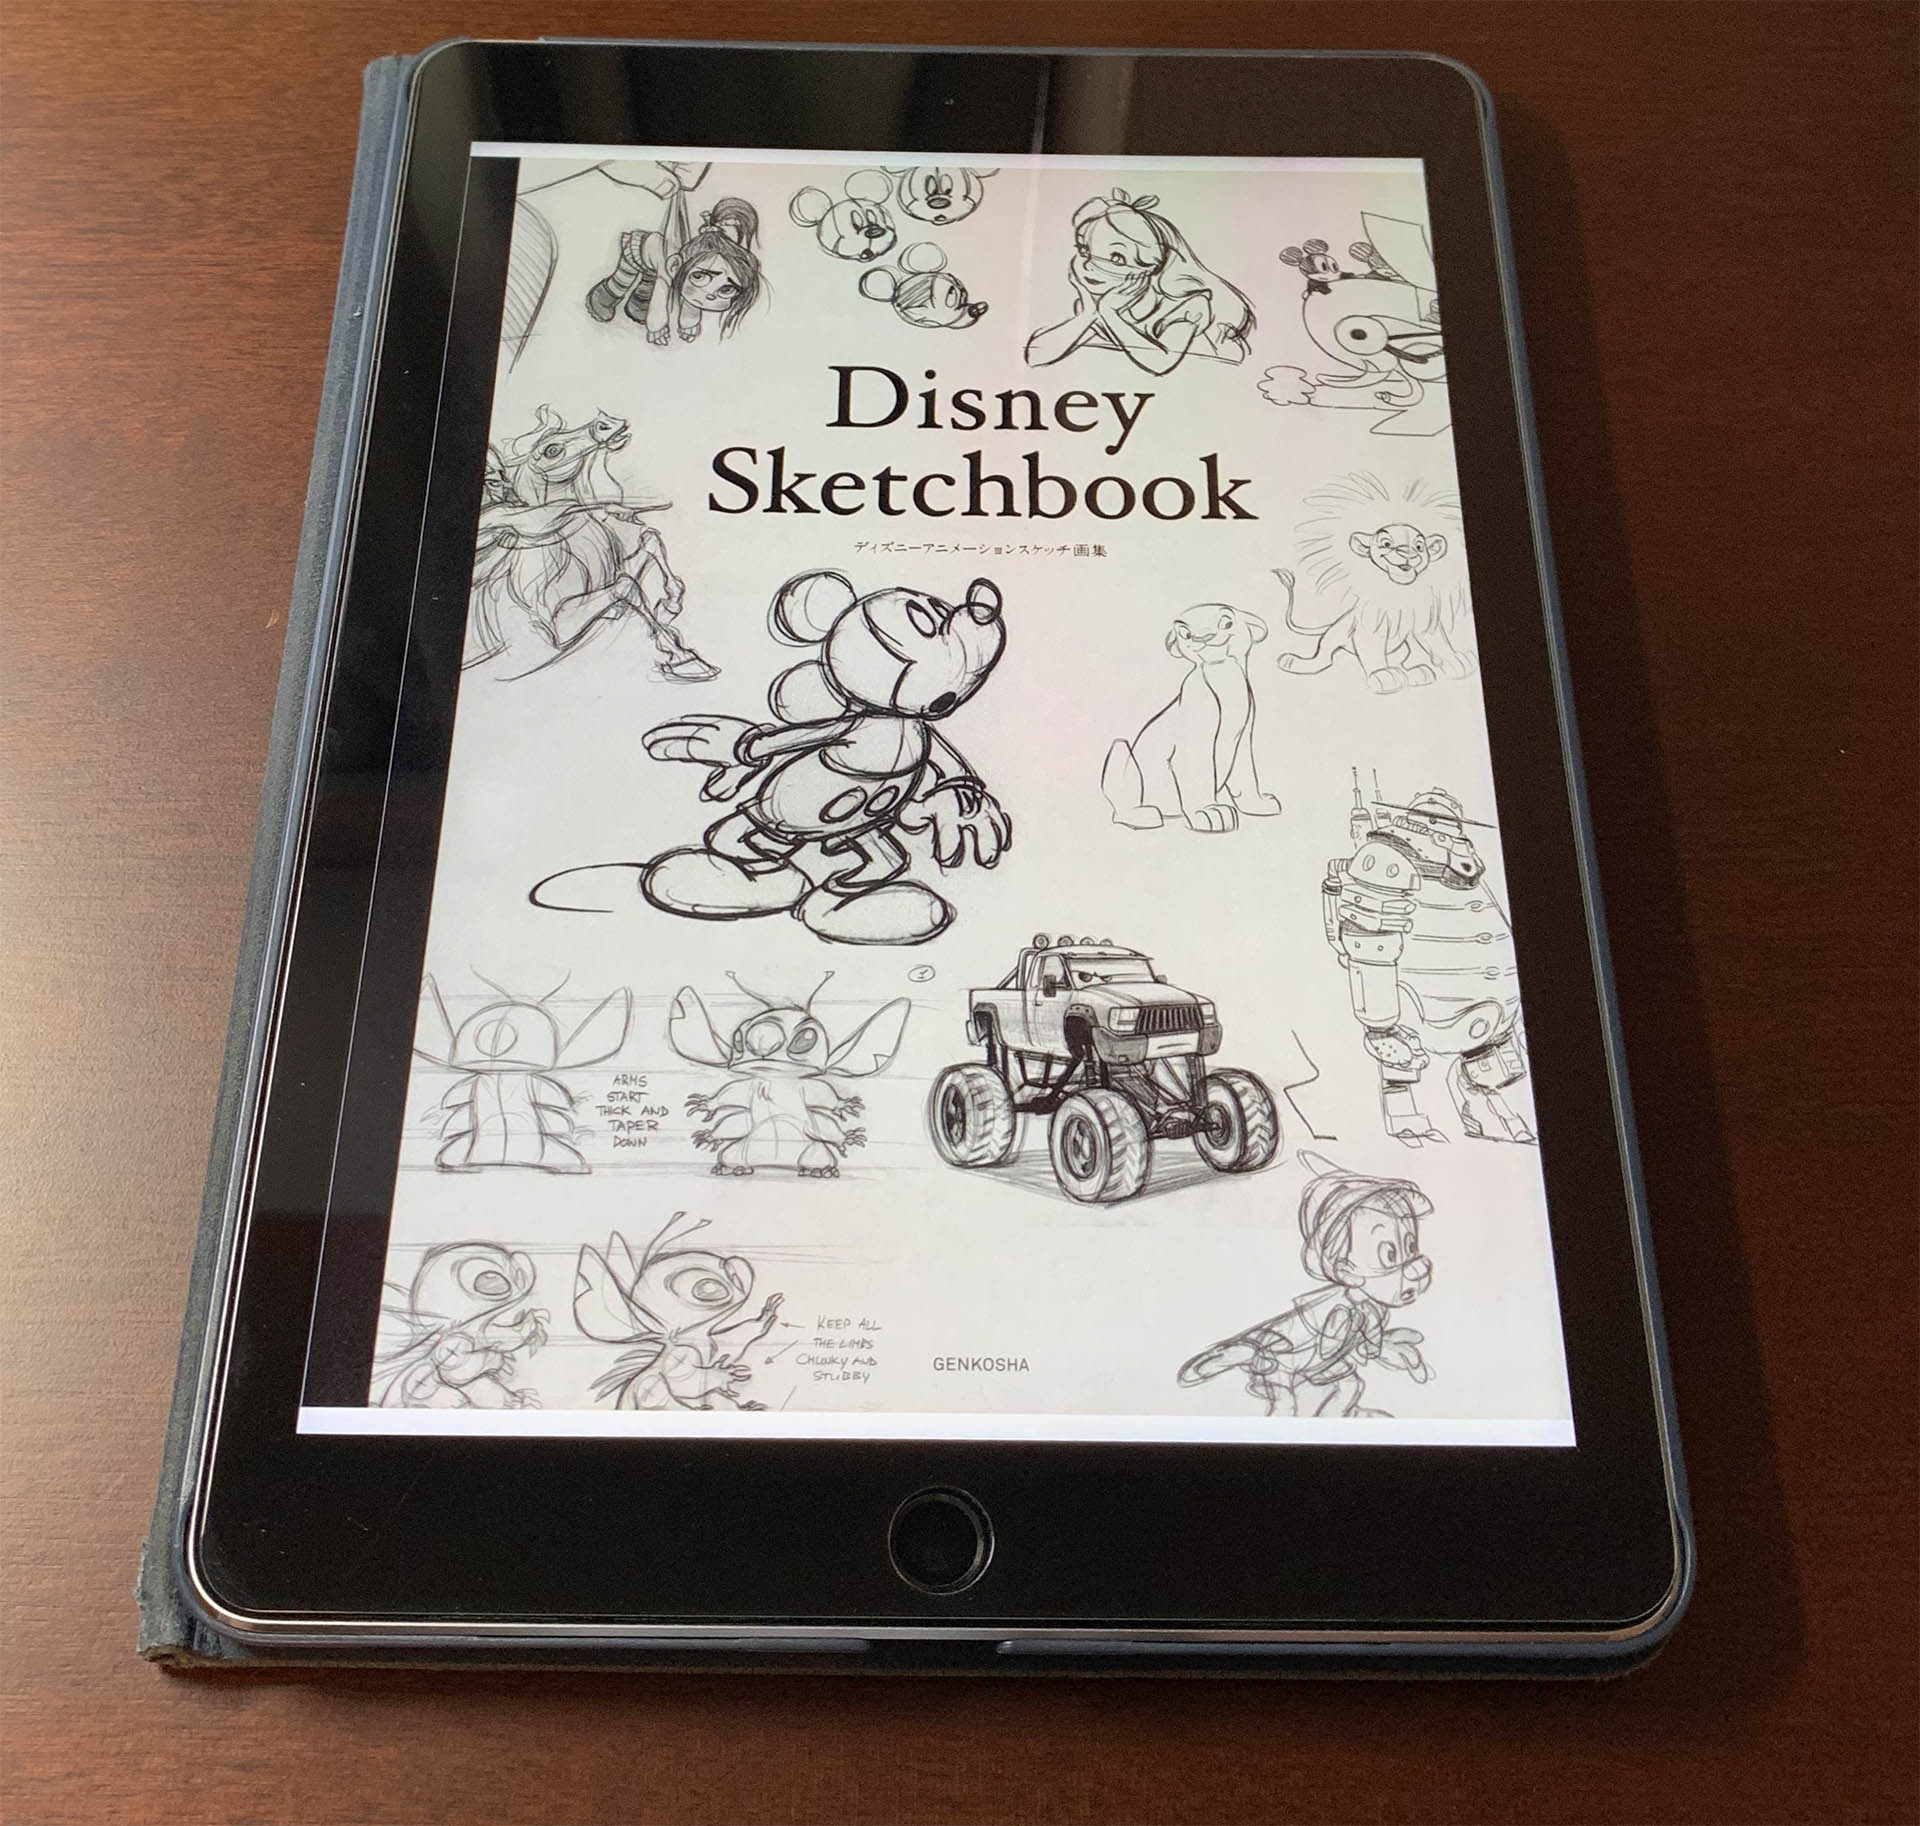 アートブックレビュー Disney Sketchbook ディズニーアニメーションスケッチ画集 線画の魅力が凝縮された一冊 Creativeideanote